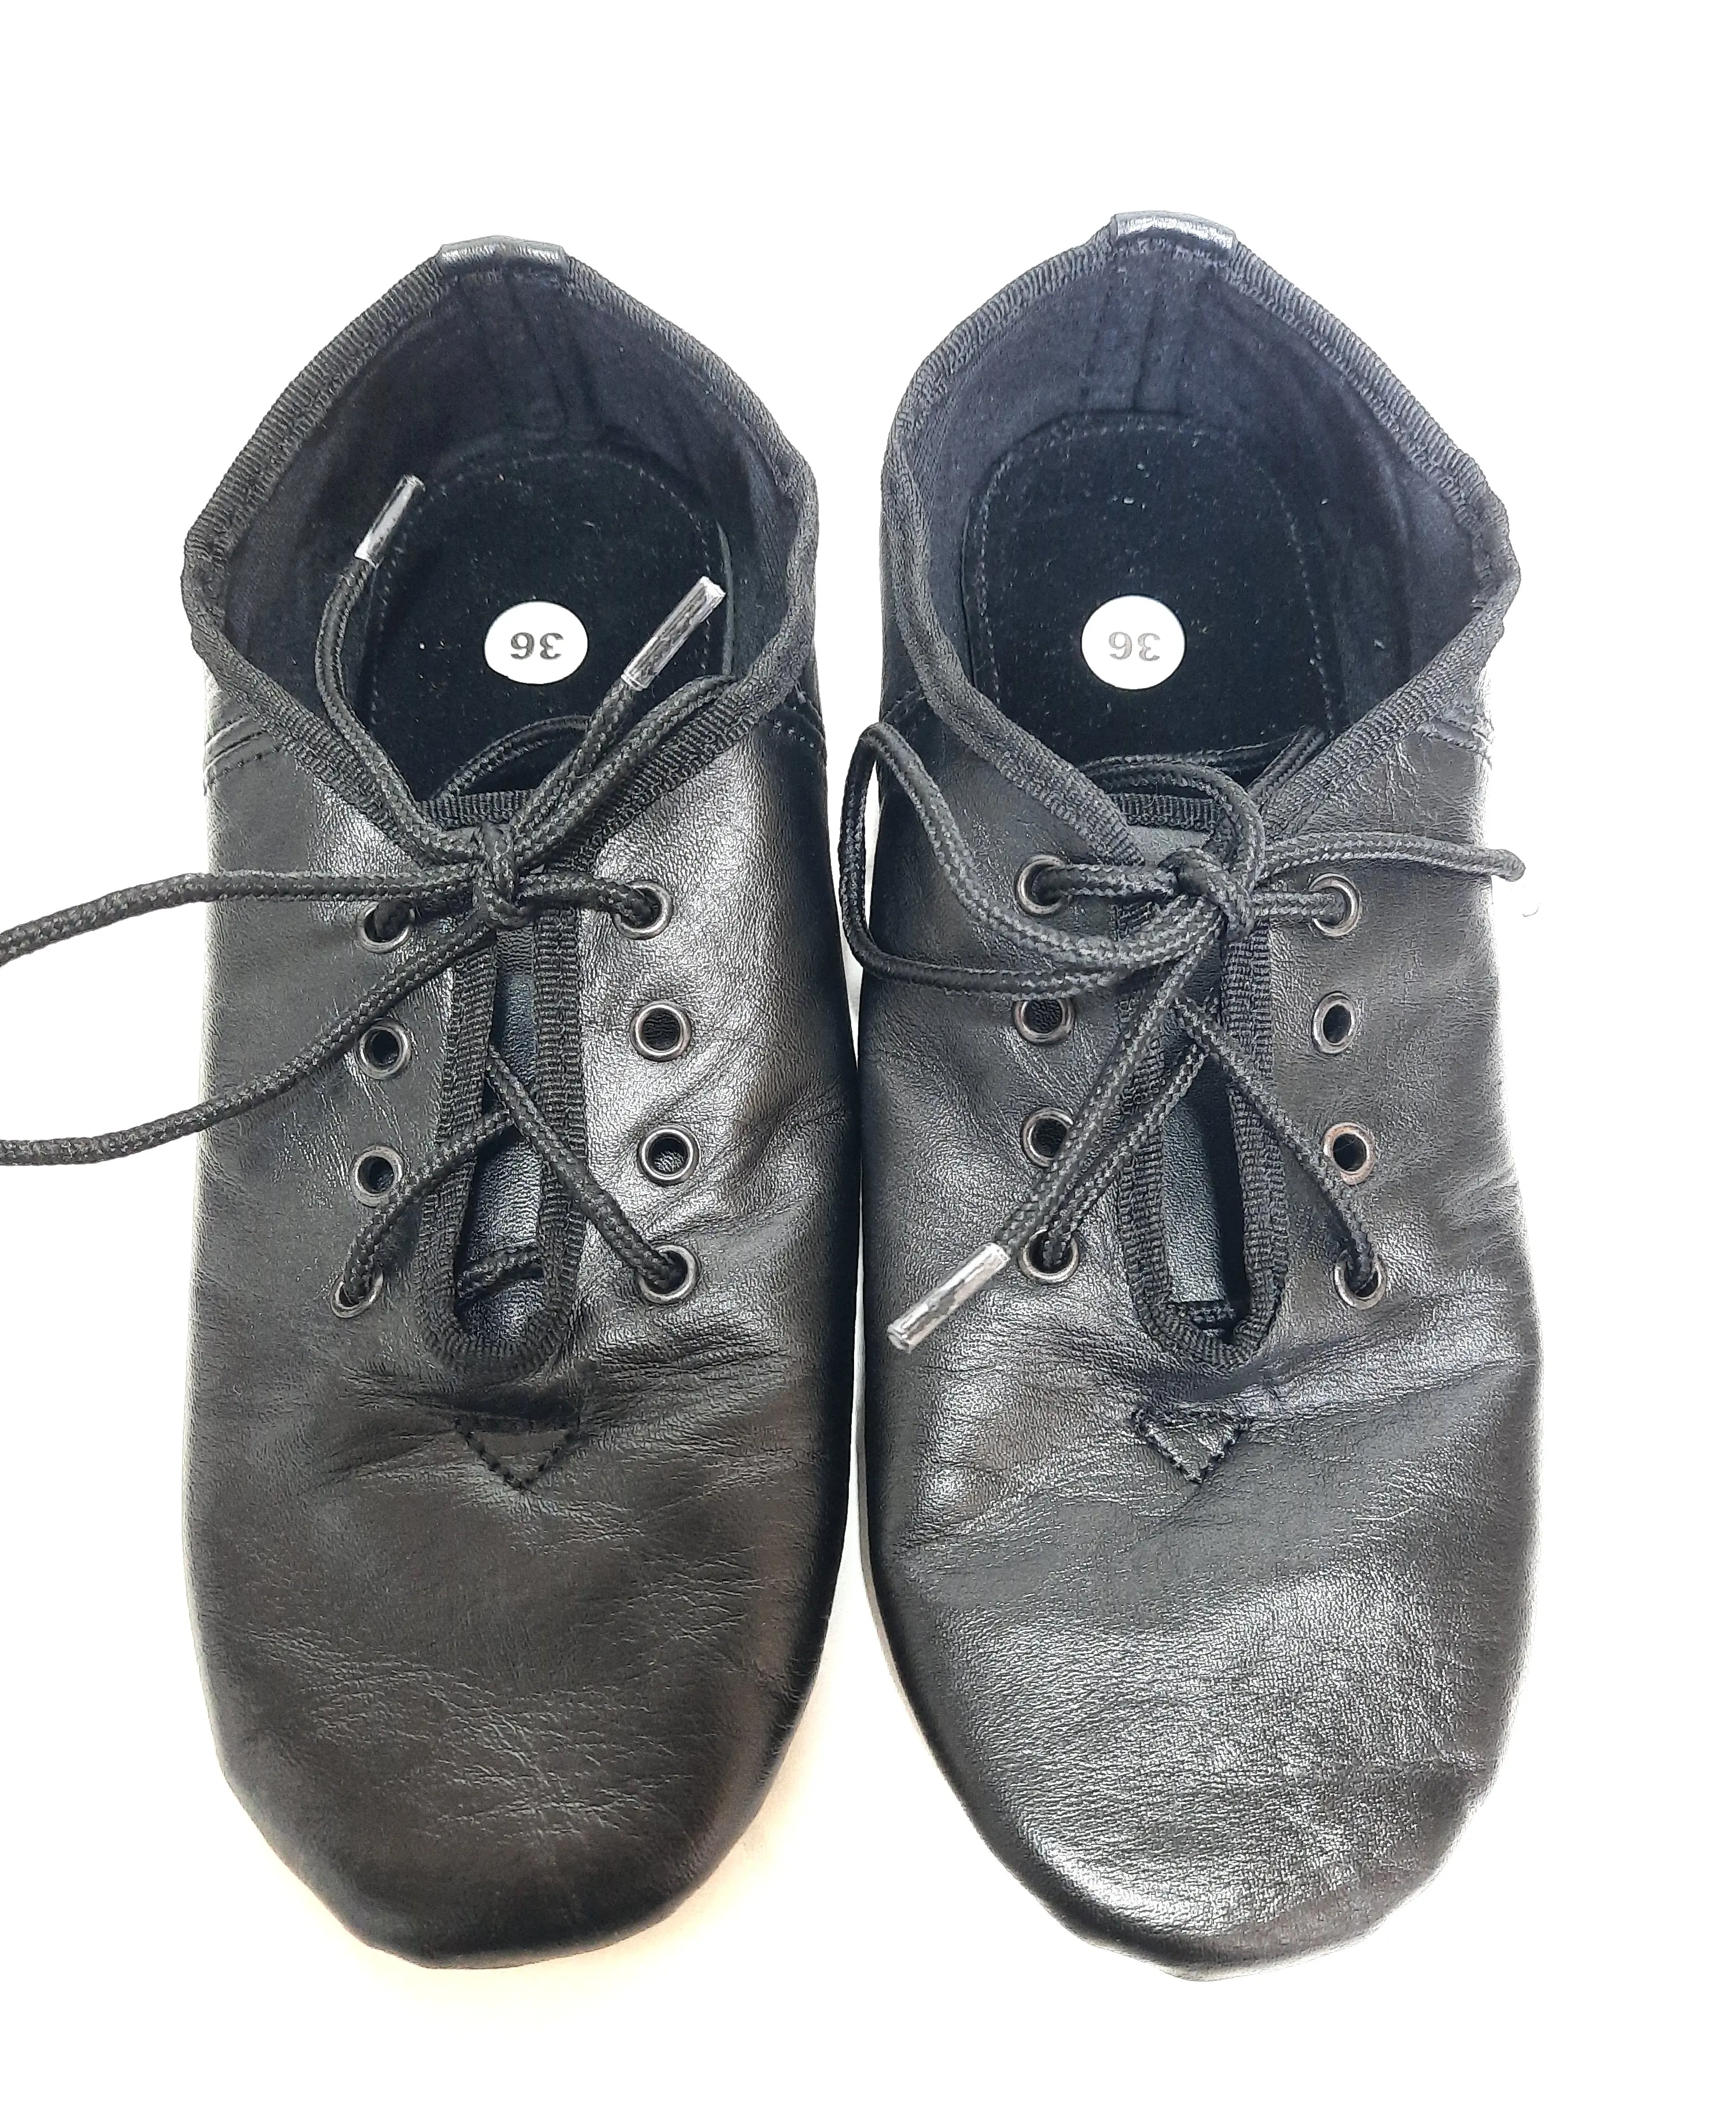 Yeni adım dans ayakkabıları dantel Up caz Eva taban uygulama çizmeler kızlar için hakiki siyah deri yumuşak taban İngiltere abd boyutları koşu ayakkabıları